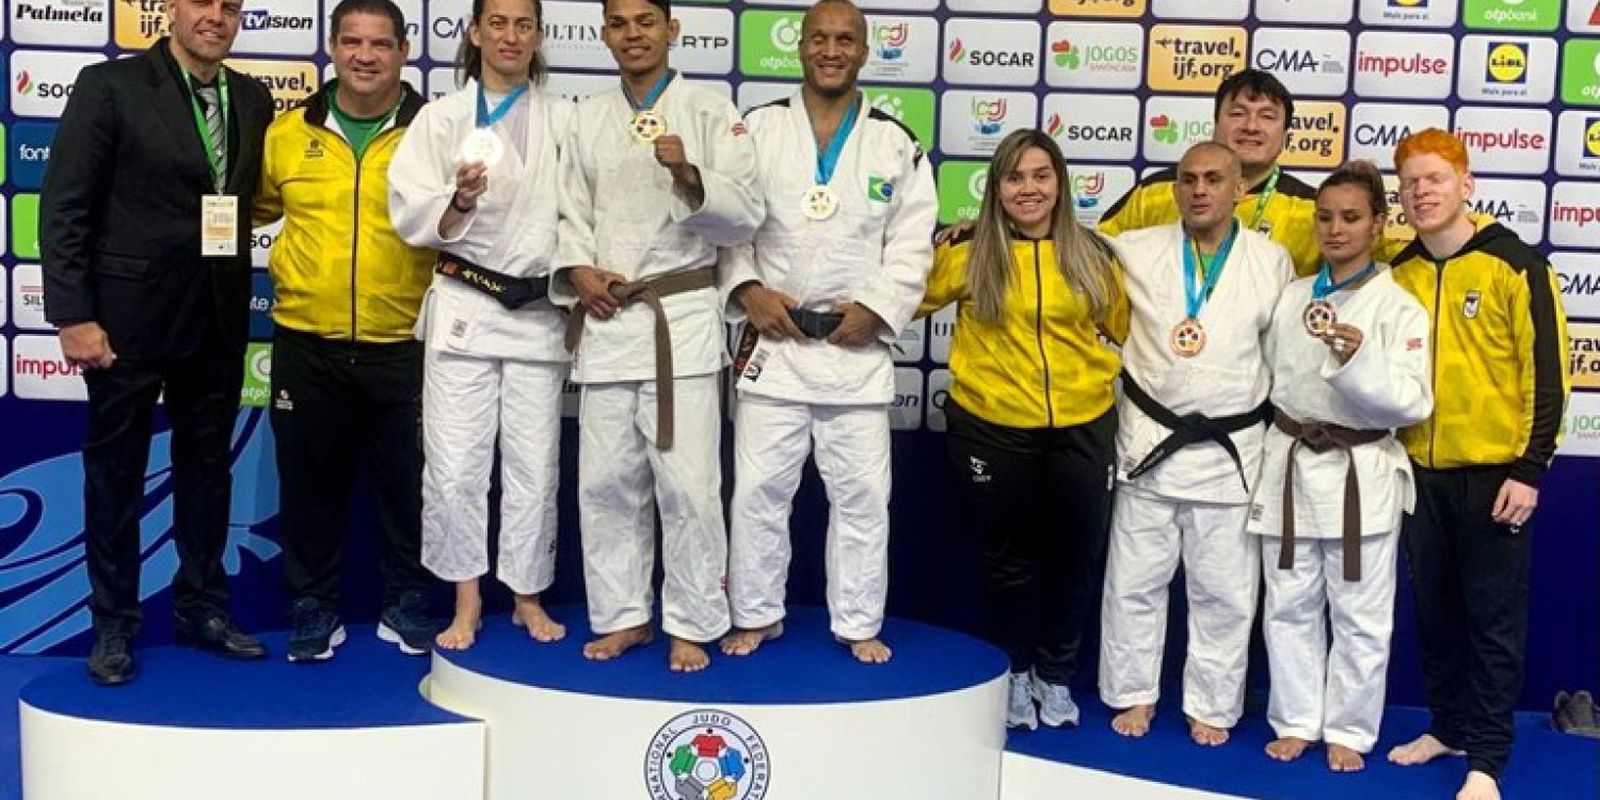 Le judo paralympique fait ses débuts au Grand Prix d’Almada avec cinq podiums